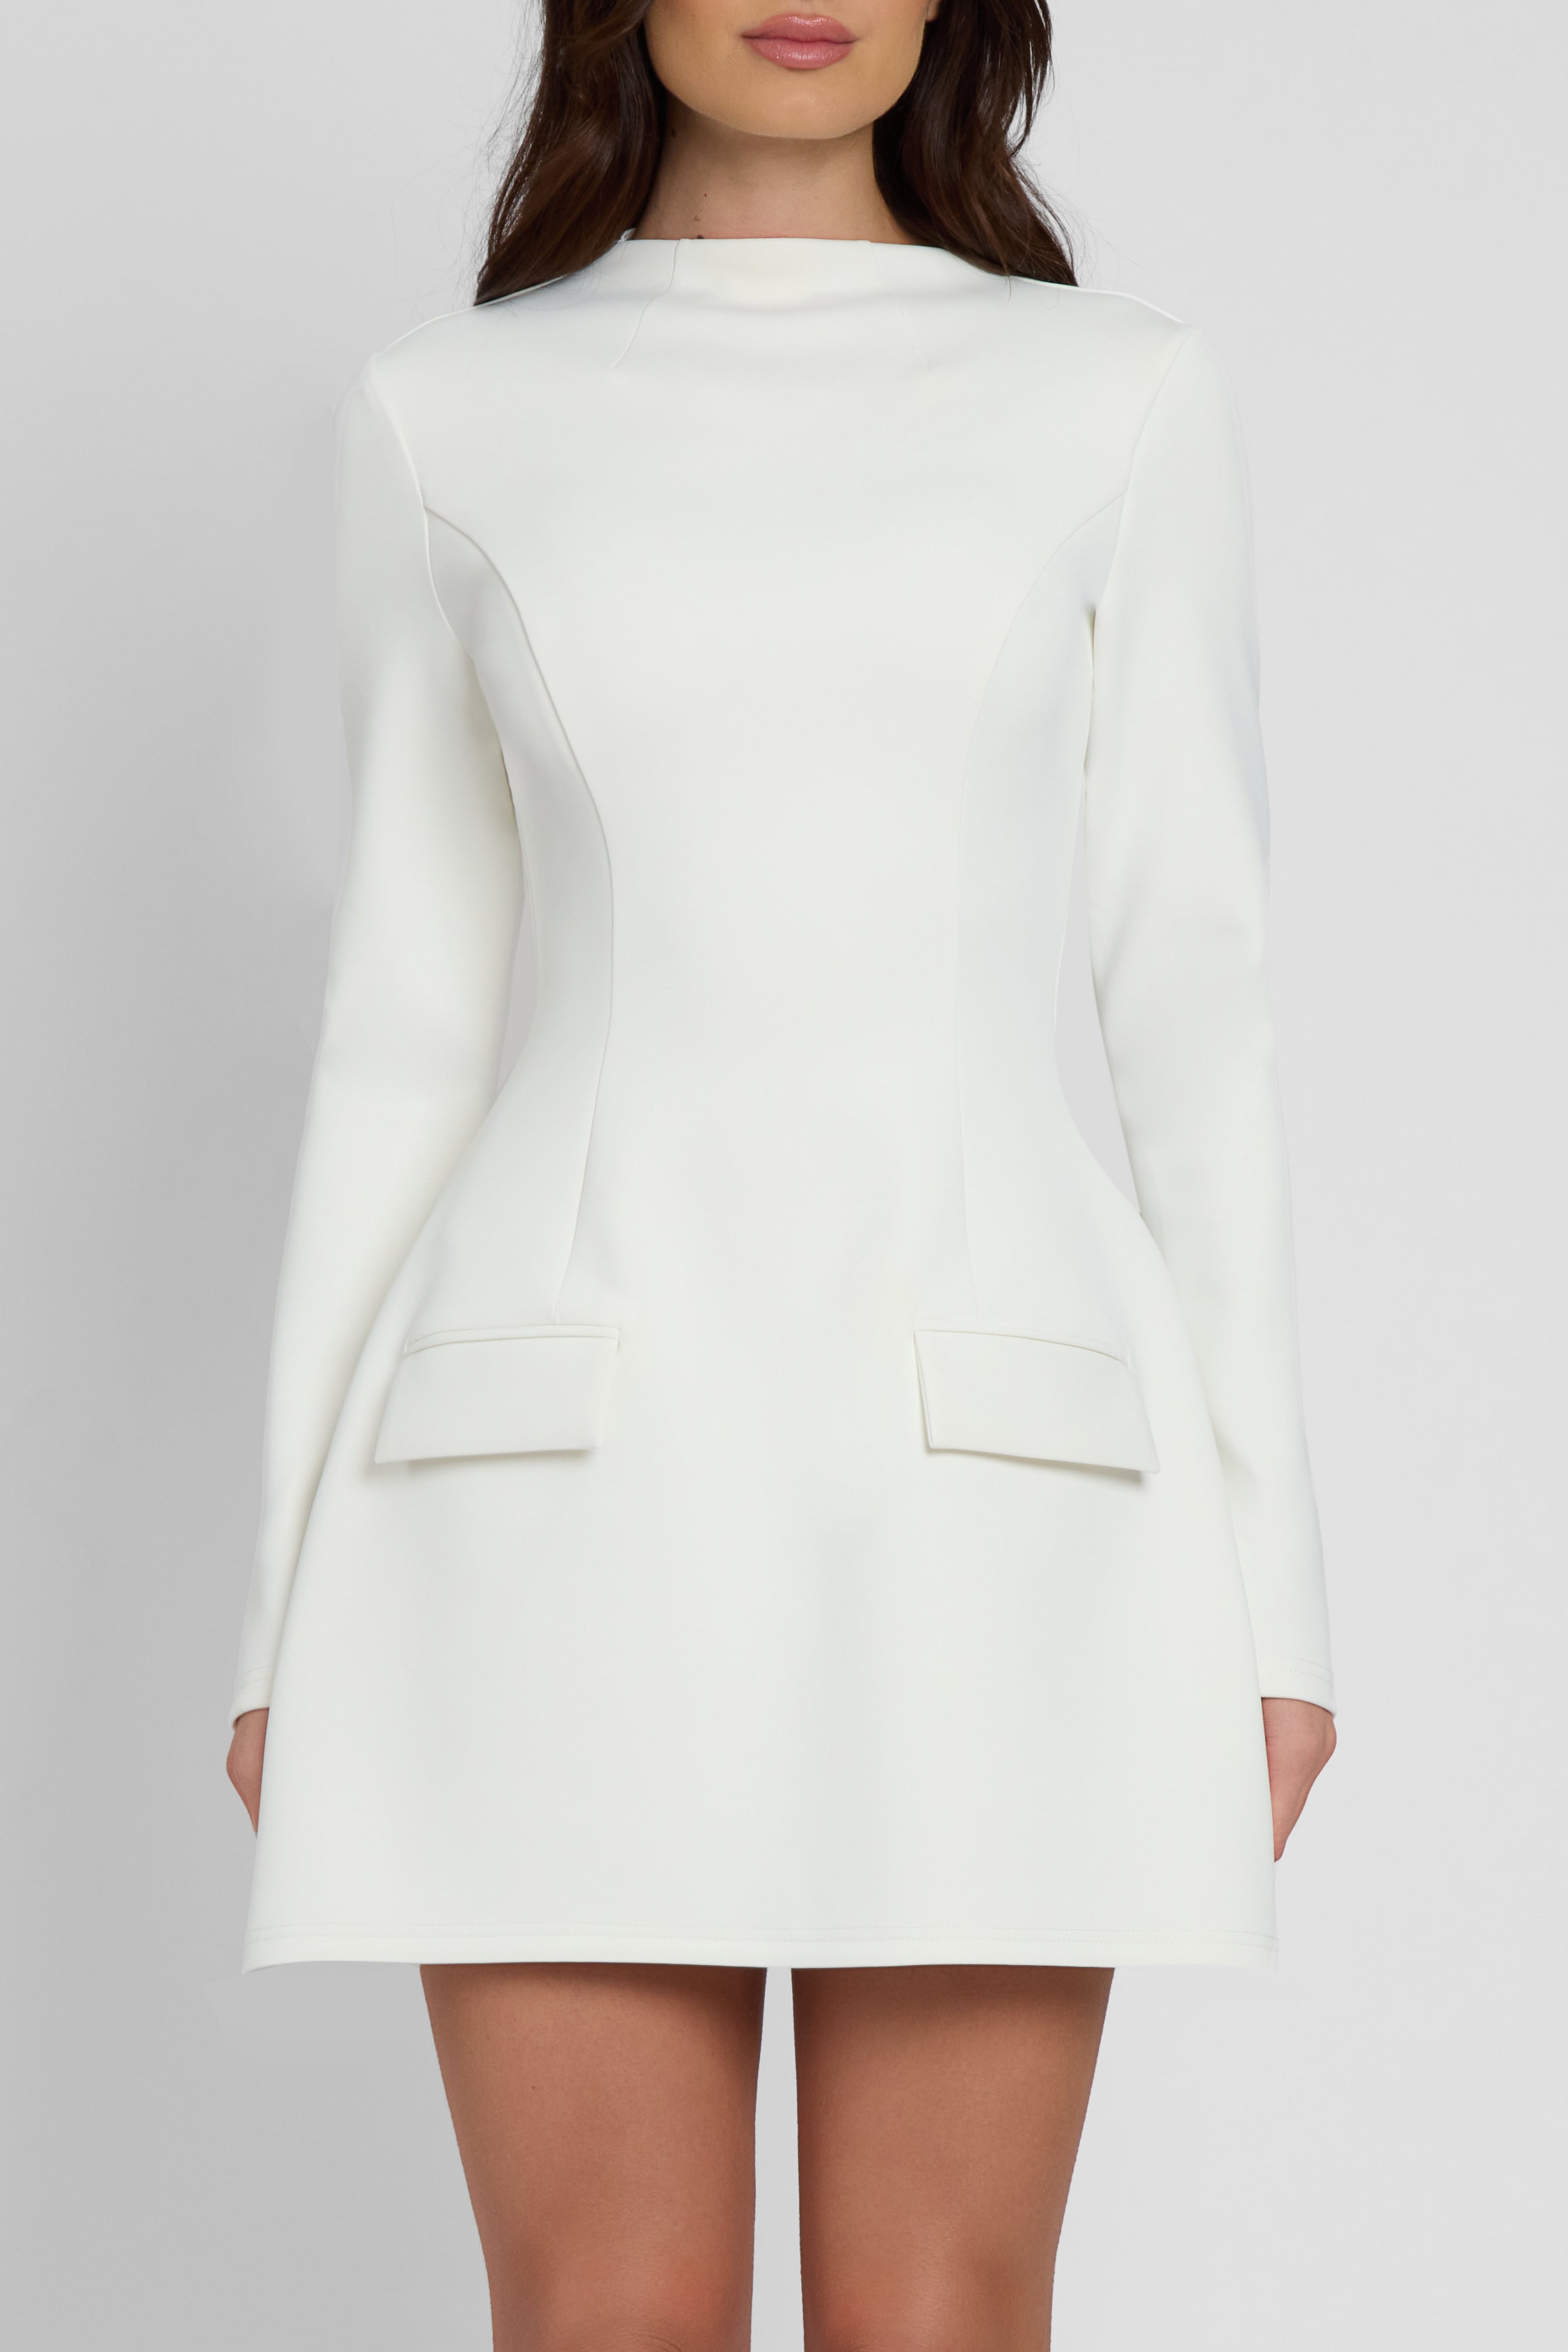 Logan Long Sleeve Pocket Mini Dress - White.